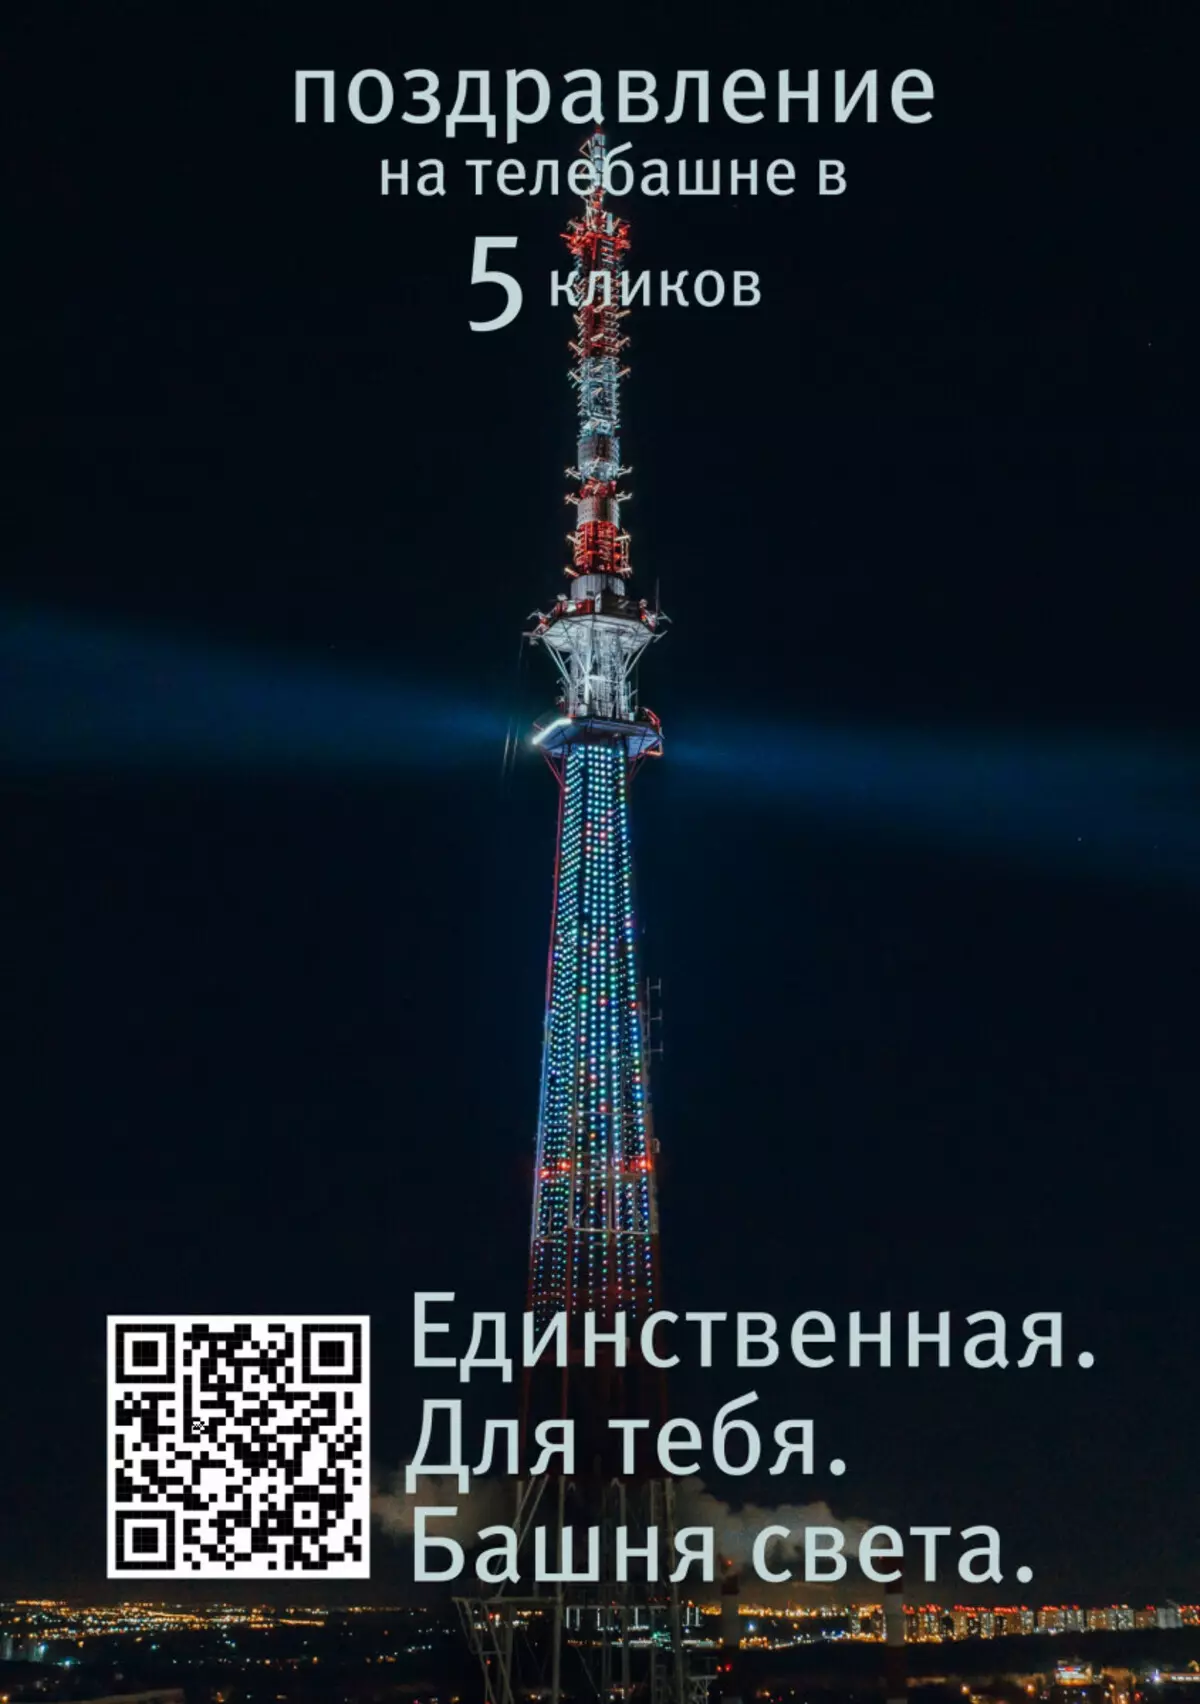 Nizhny Novgorod يمكن أن تجعل تهنئة خفيفة على التلفزيون 20952_1